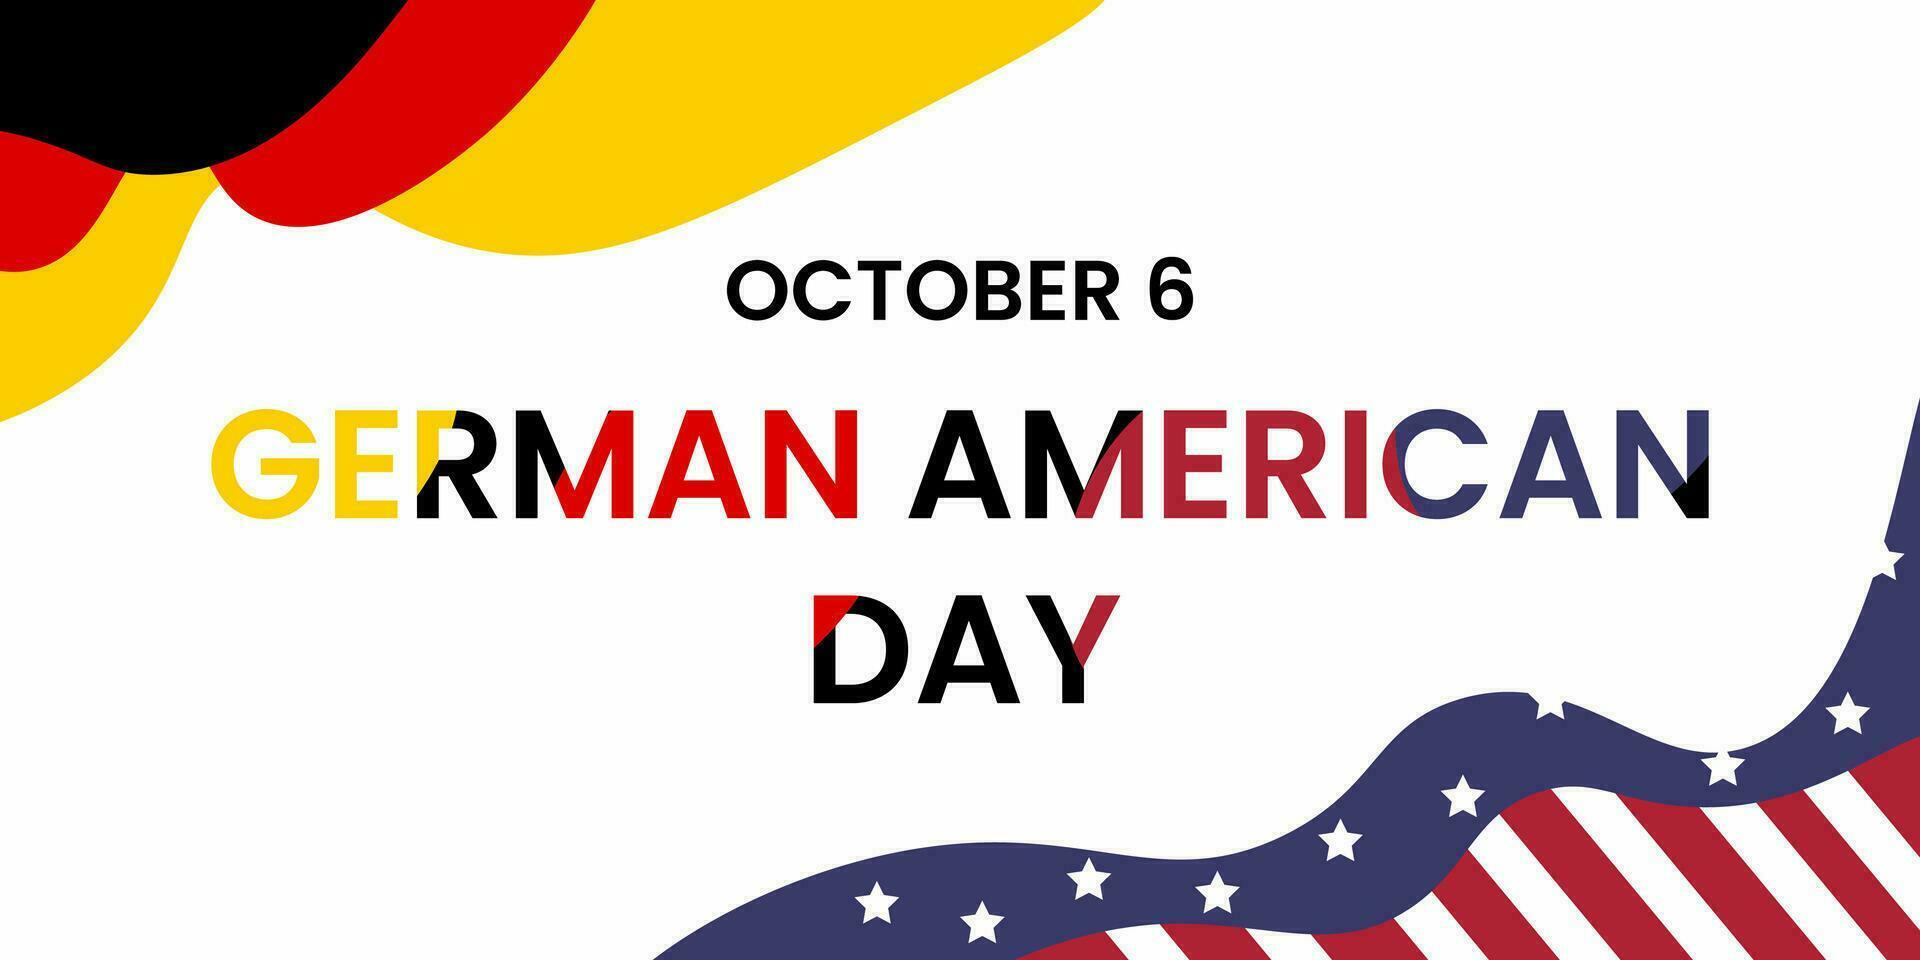 tysk amerikan dag på oktober 6. de förenad stater Semester med USA och tysk flagga. lämplig för. social media inlägg, affischer, banderoller etc. vektor